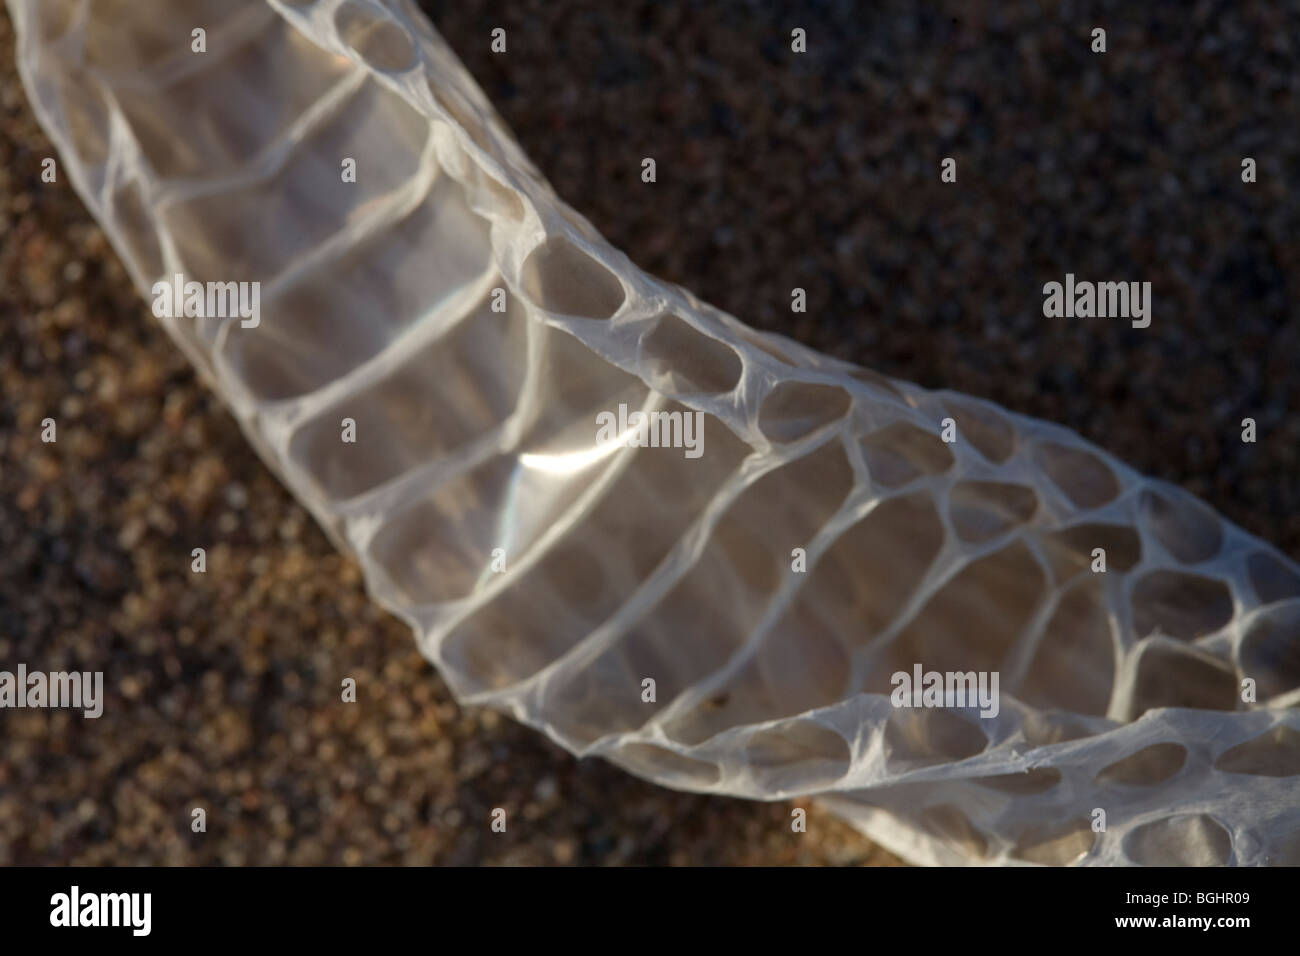 Frisch vergossen Sie Schlangenhaut auf dem Sand in Ägyptens Östliche Wüste gefunden. Stockfoto